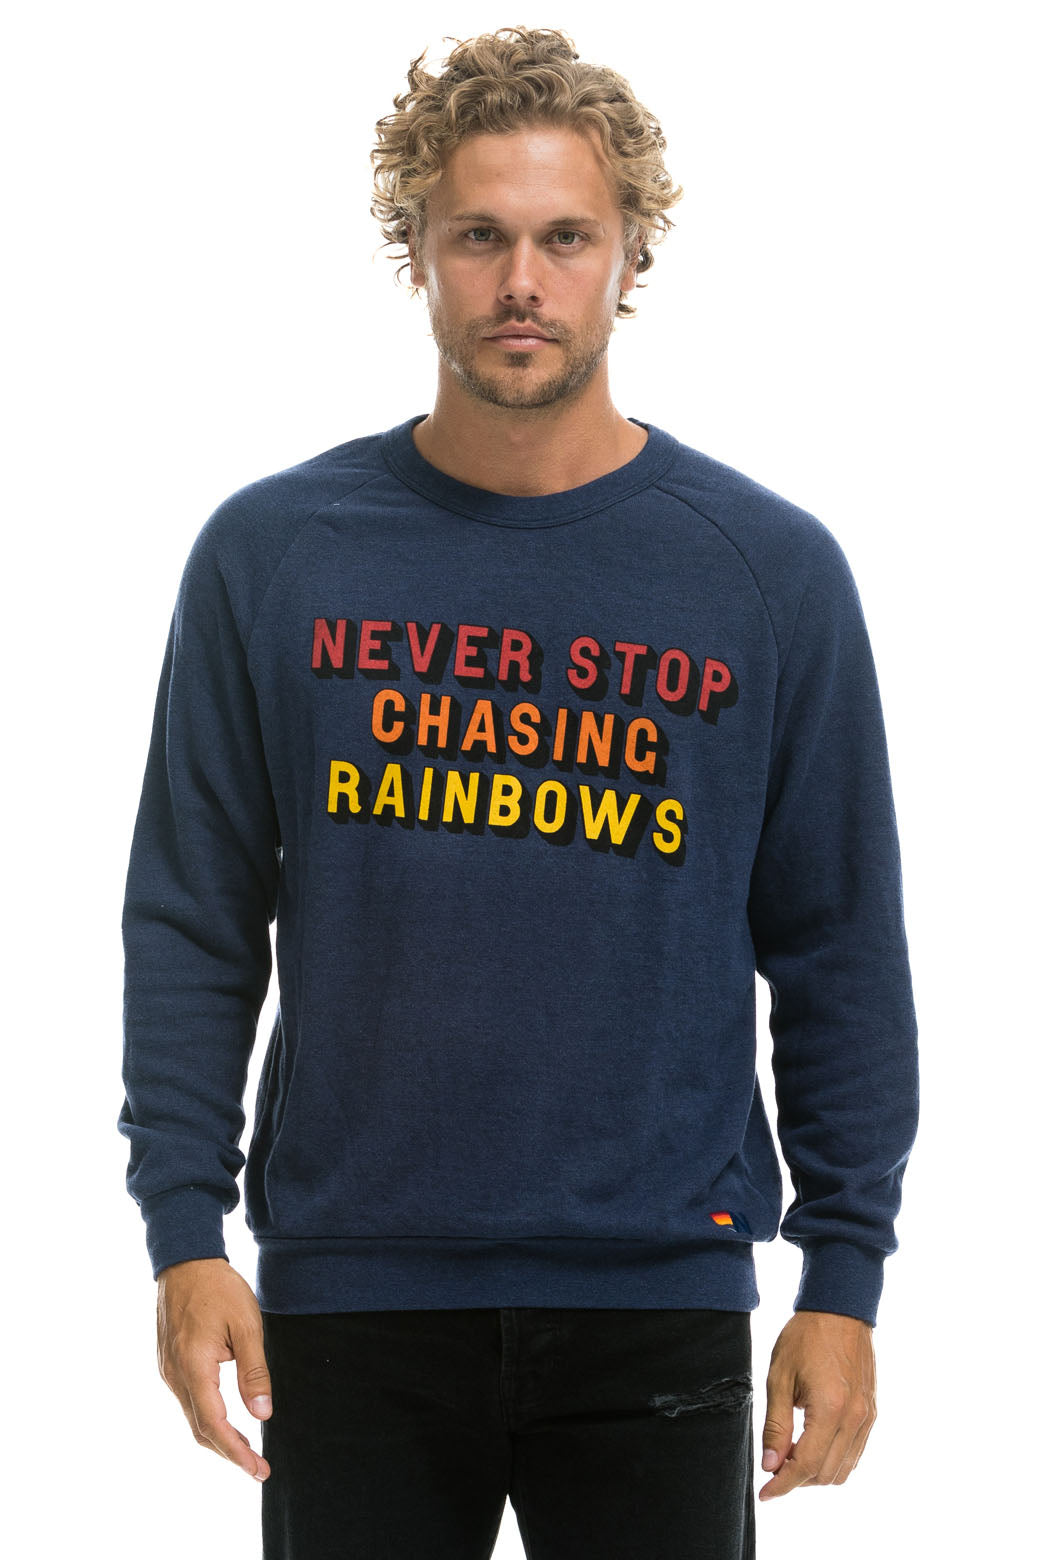 NEVER STOP CHASING RAINBOWS CREW SWEATSHIRT - NAVY Sweatshirt Aviator Nation 